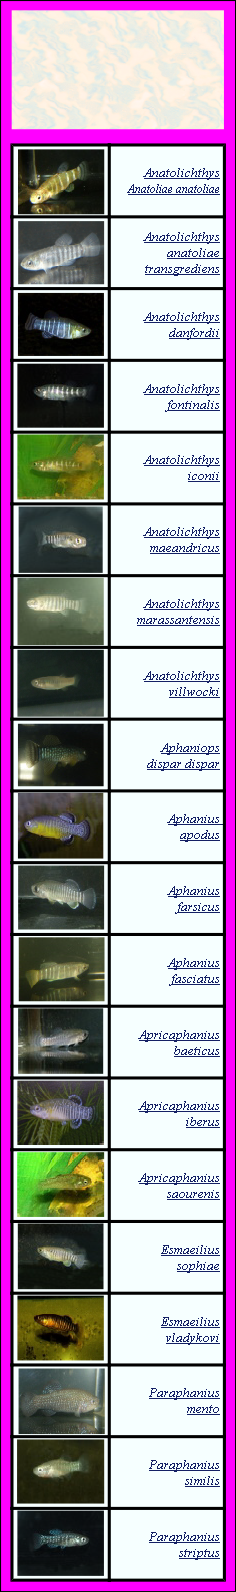 Le genre « Aphanius » a éclaté en 2020 en plusieurs nouveaux genres : Anatolichthys, 
Aphaniops, Aphanius , Apricaphanius ,  Esmaeilius, Paraphanius
Paraphanius